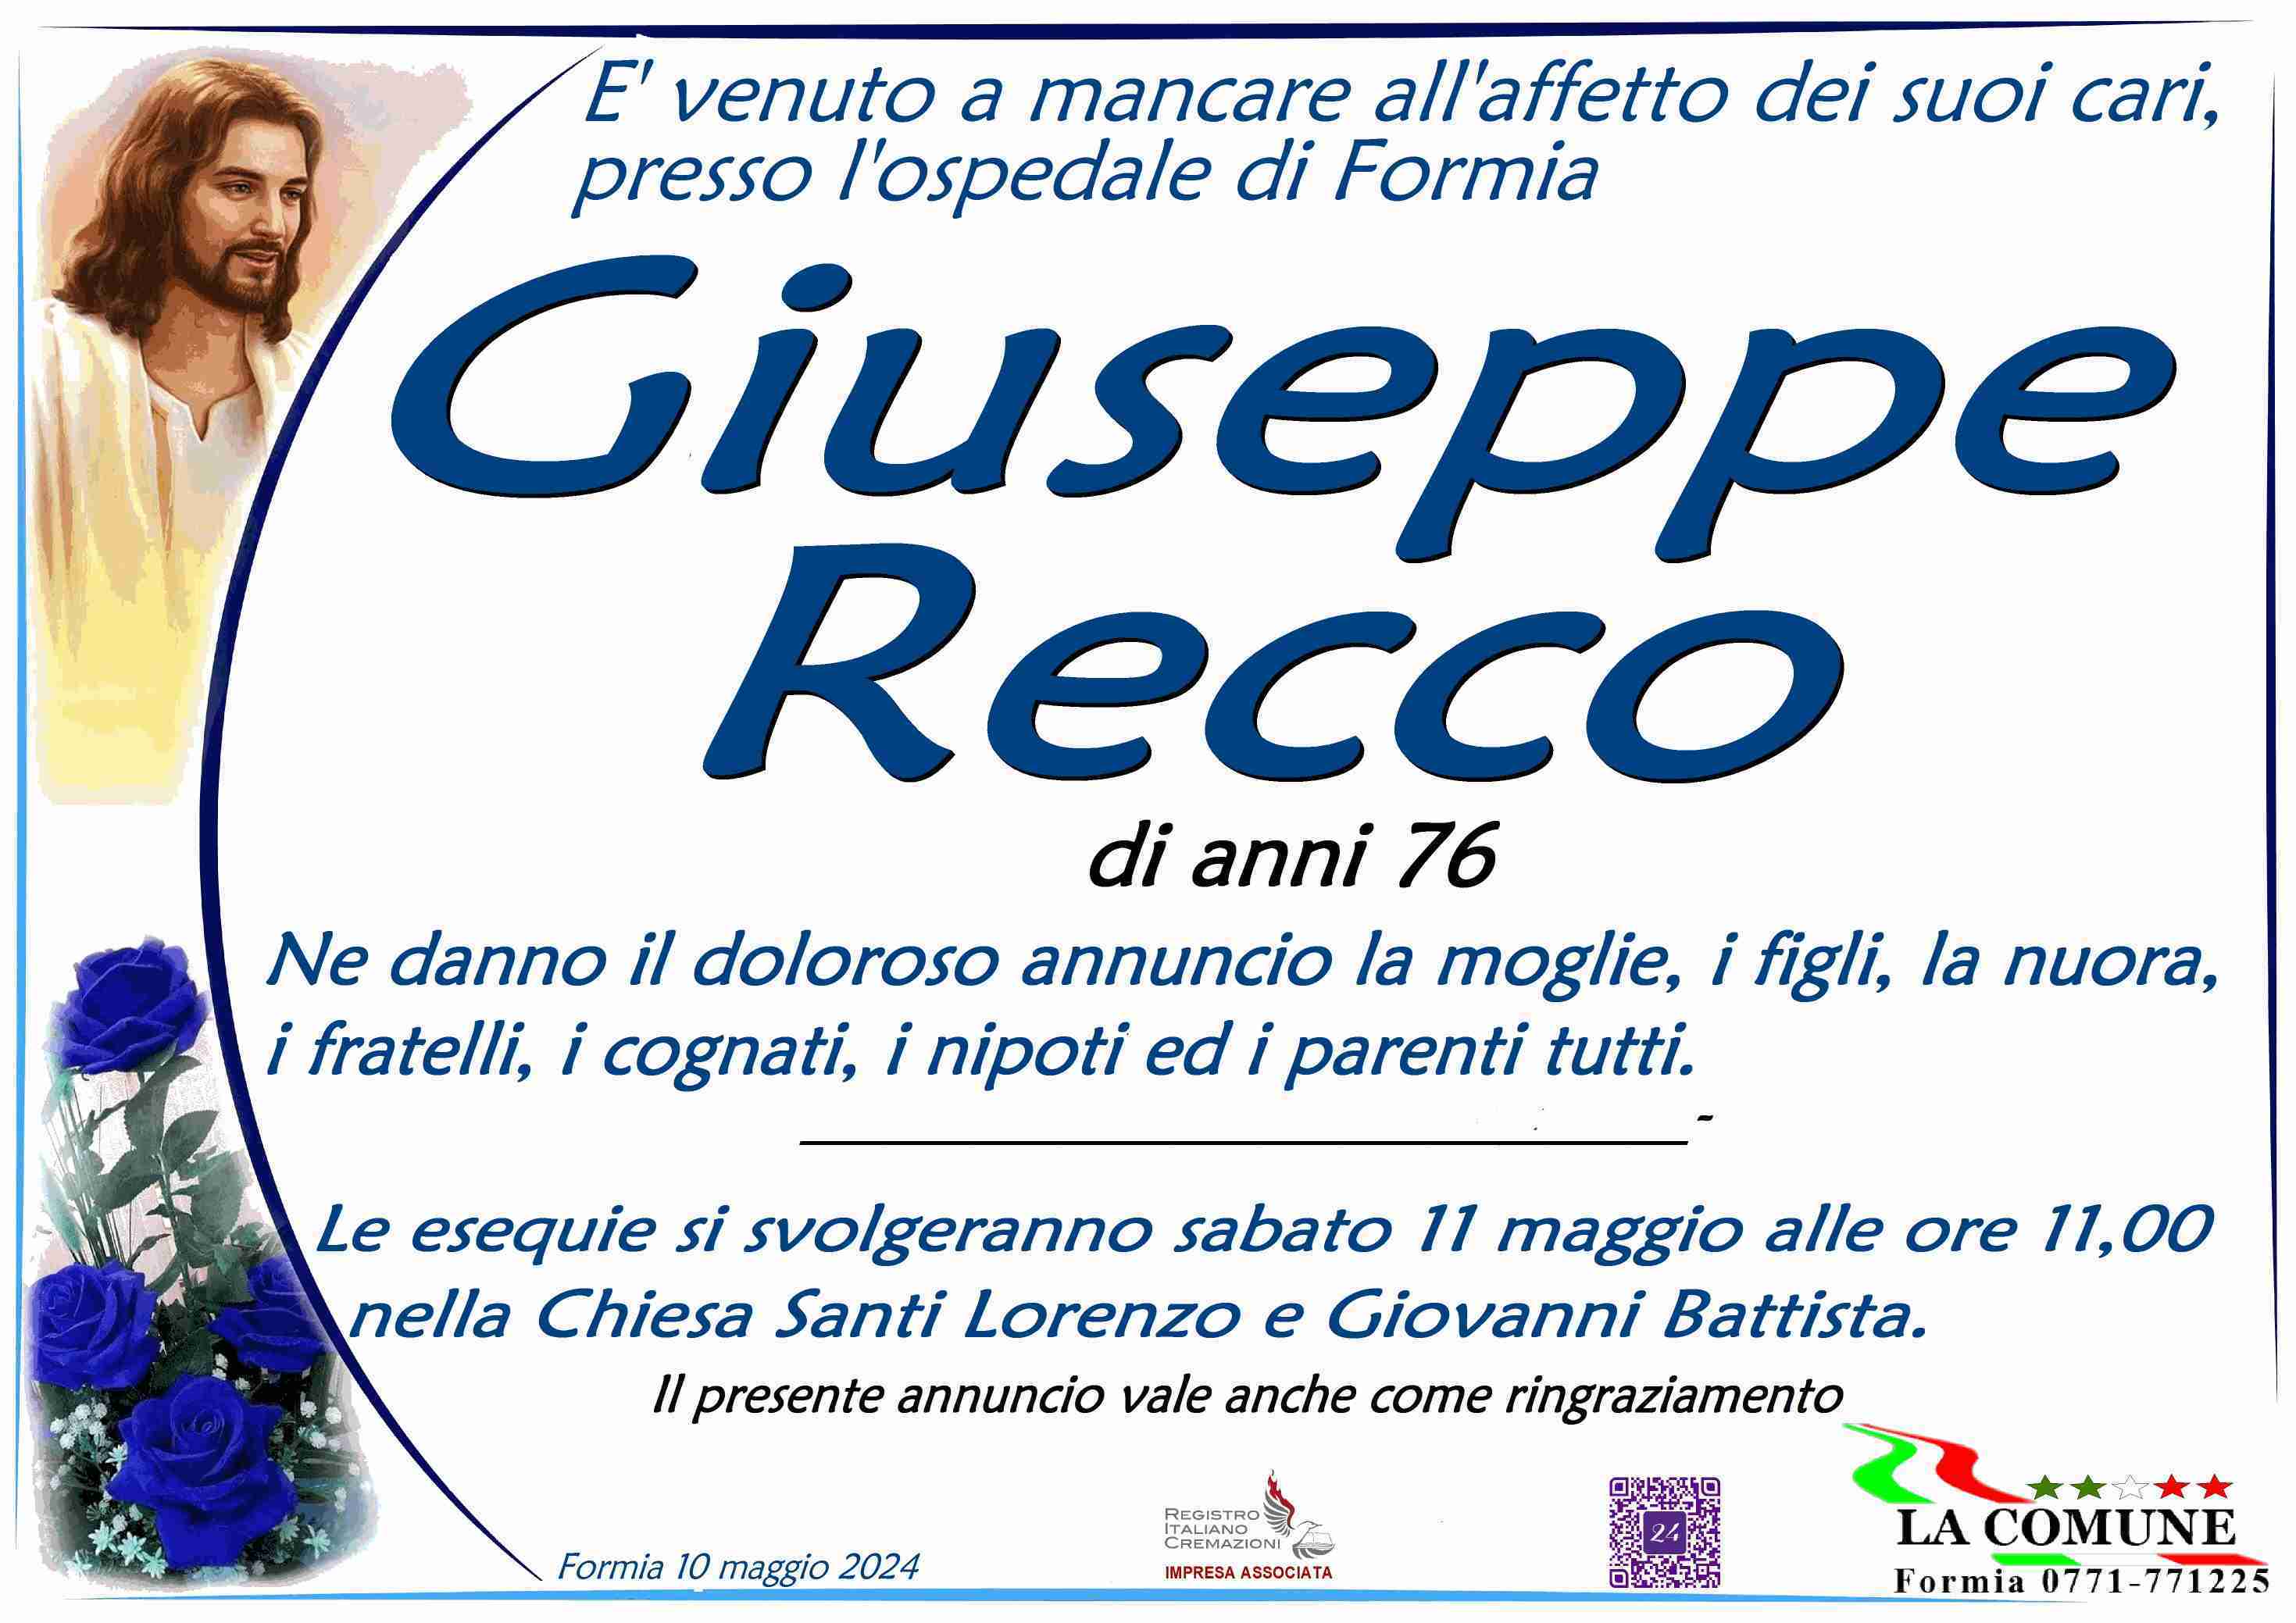 Giuseppe Recco